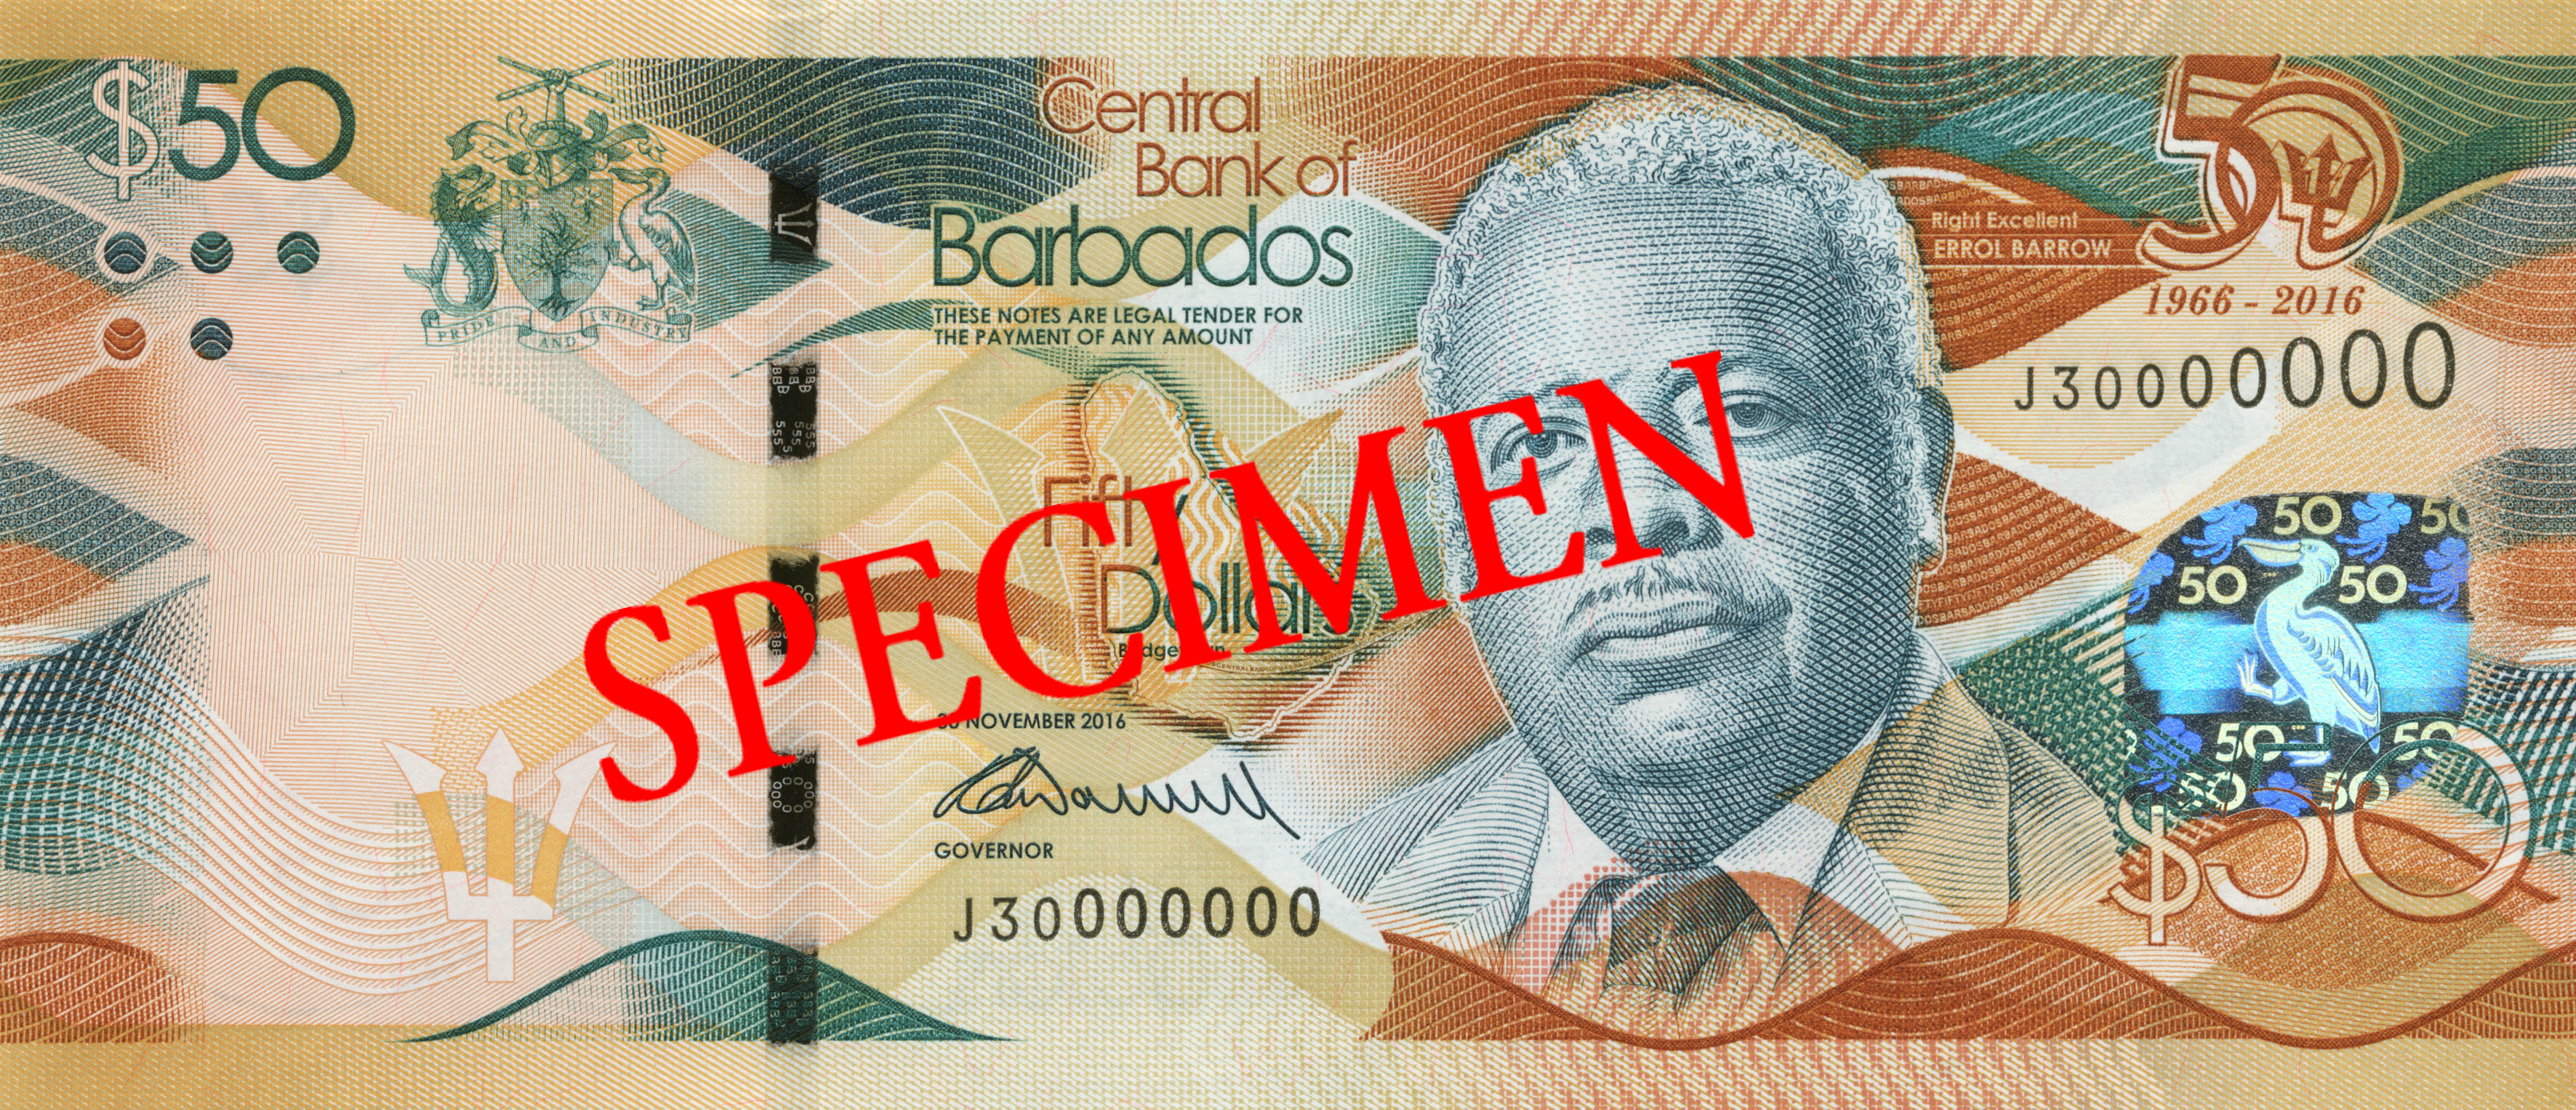 Barbados 2017 $50 commemorative banknote. Image courtesy Central Bank of Barbados